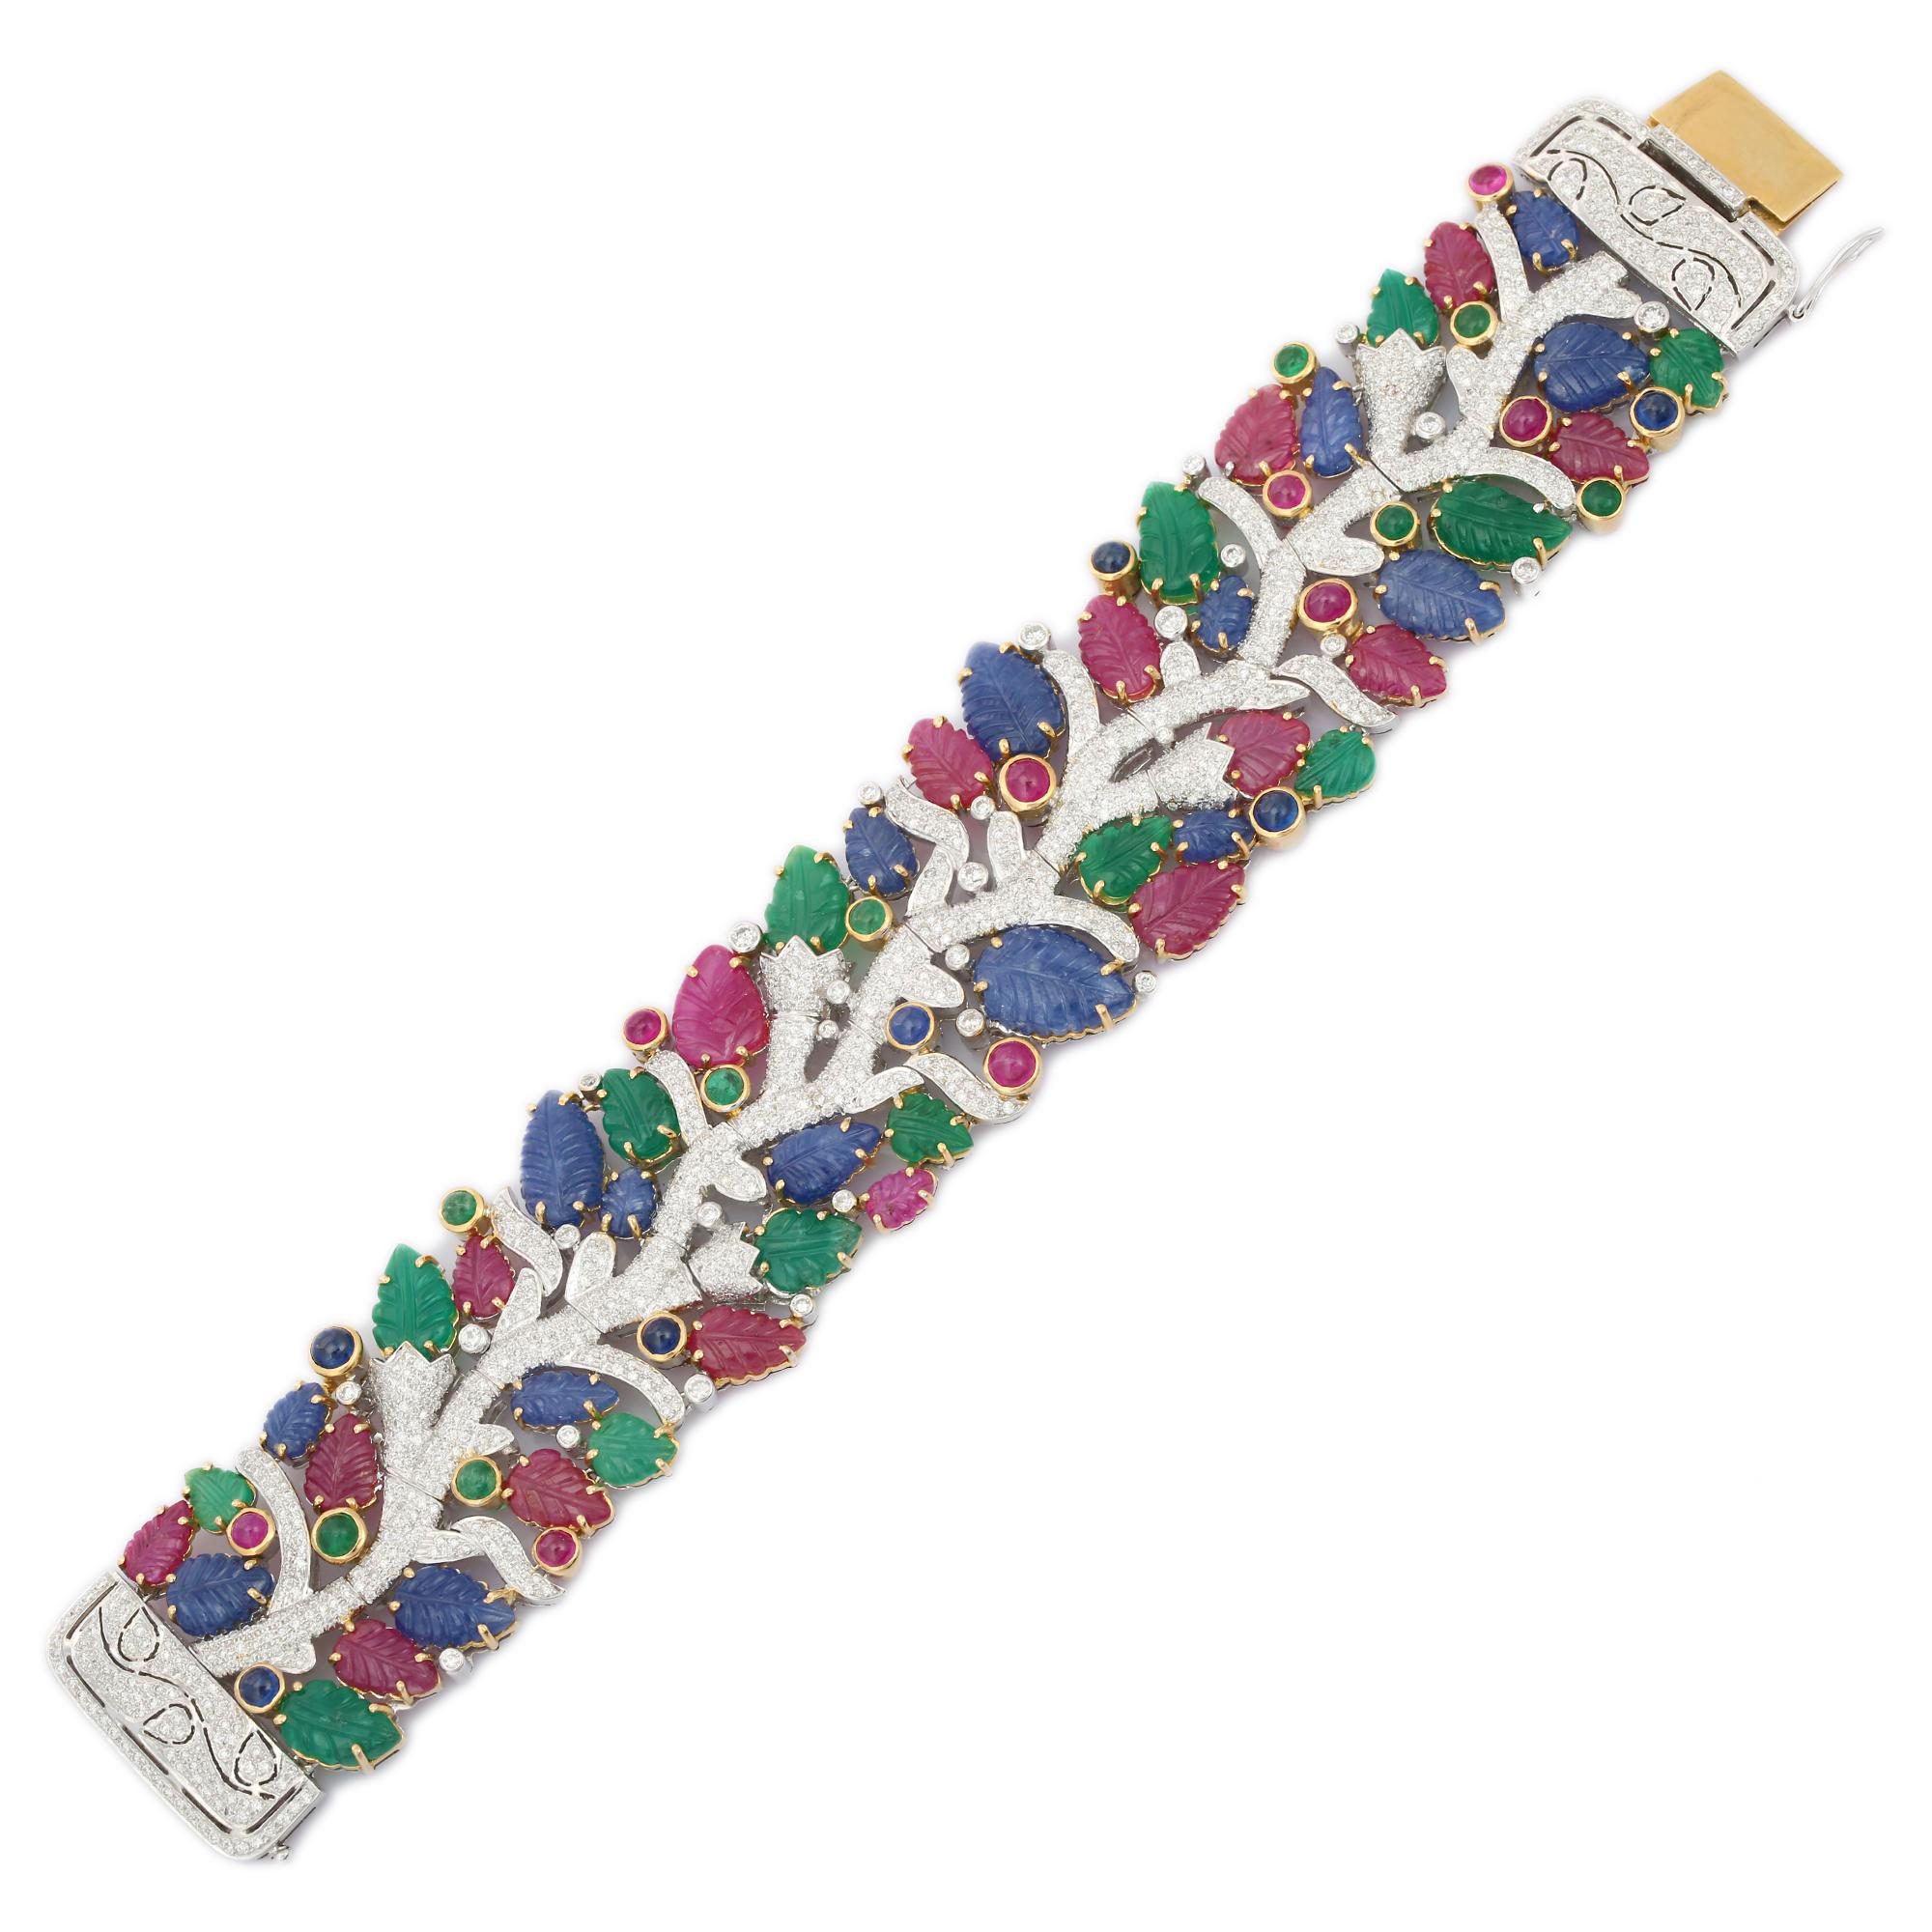 Ce bracelet en or 18 carats de 68,50 ct Emerald Ruby Sapphire met en valeur 71 émeraudes, rubis et saphirs naturels d'un poids de 68,5 carats, étincelants à l'infini. Il mesure 7.5 pouces de long. 
L'émeraude renforce les capacités intellectuelles